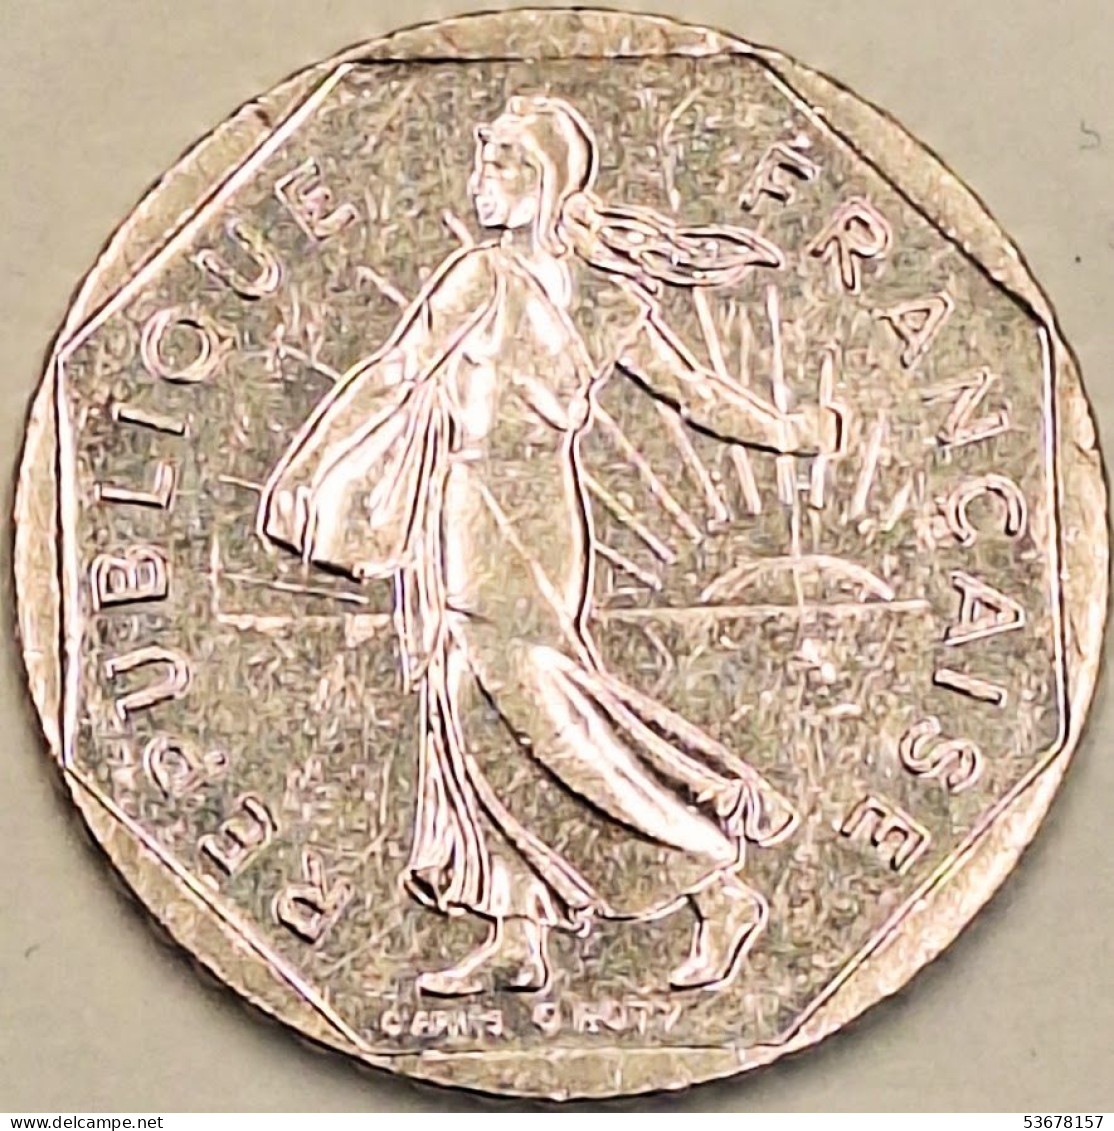 France - 2 Francs 1998, KM# 942.1 (#4329) - 2 Francs